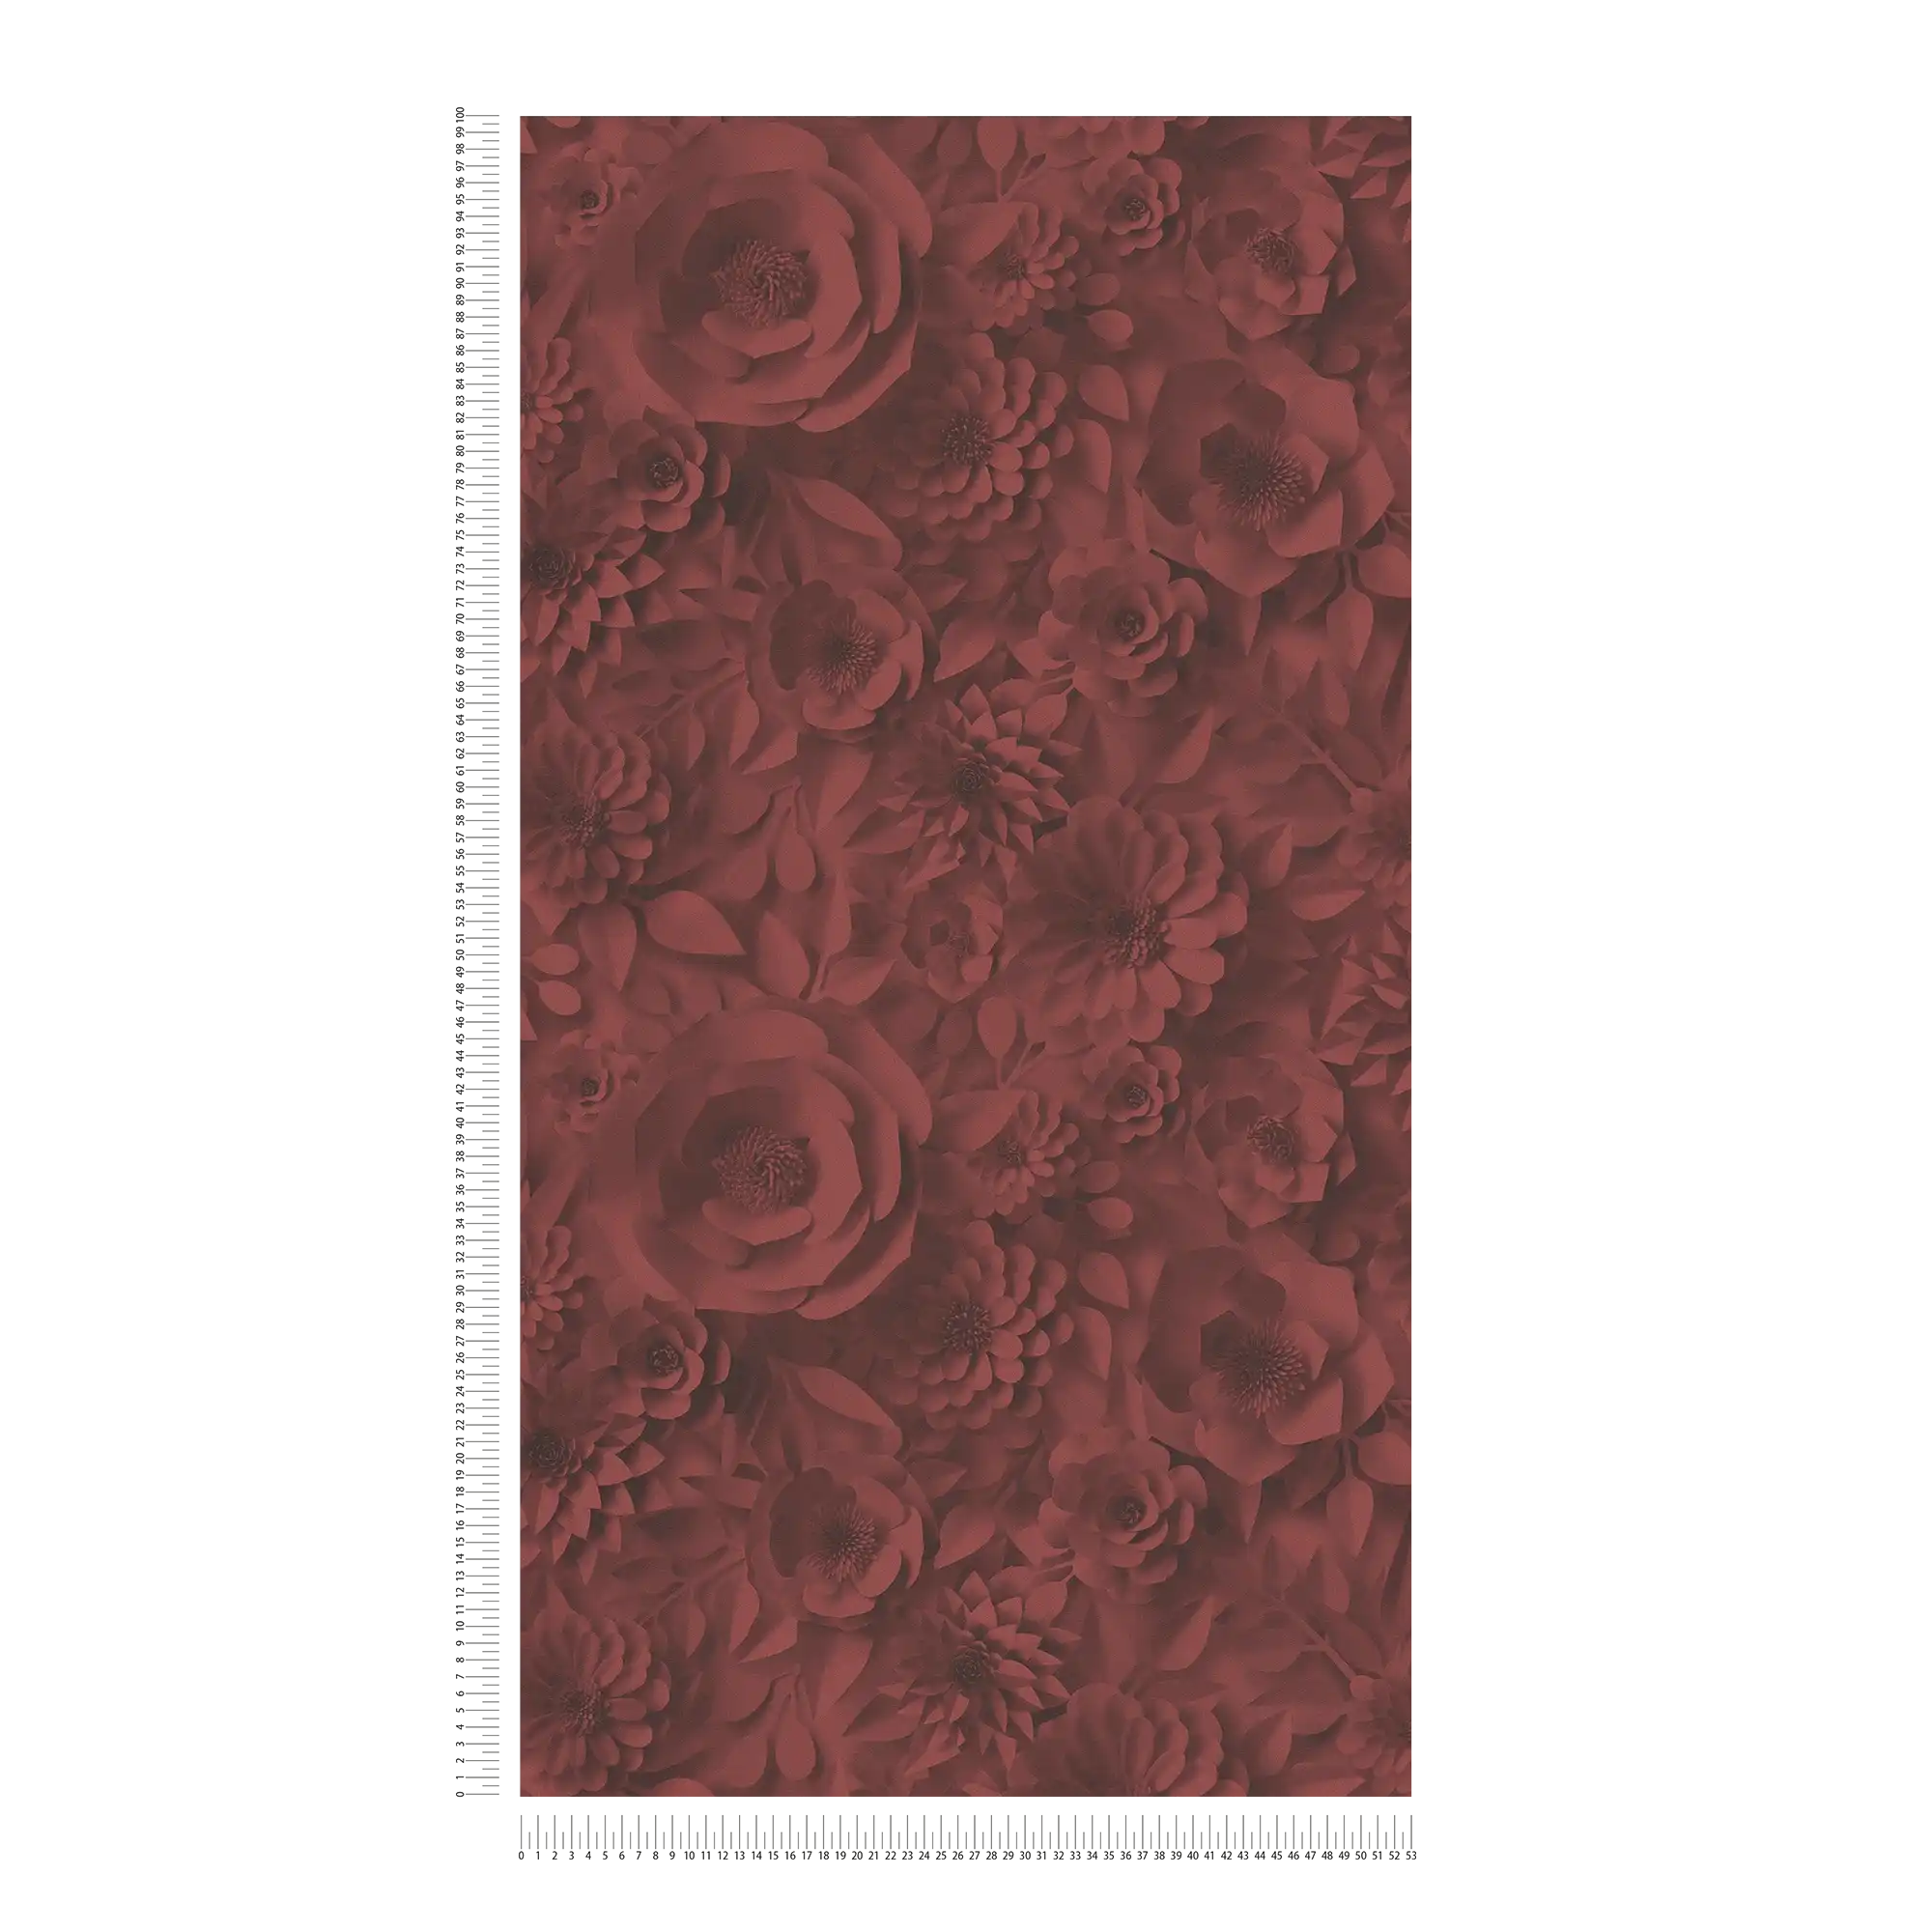             Papel pintado 3D con flores de papel, patrón floral gráfico - Rojo
        